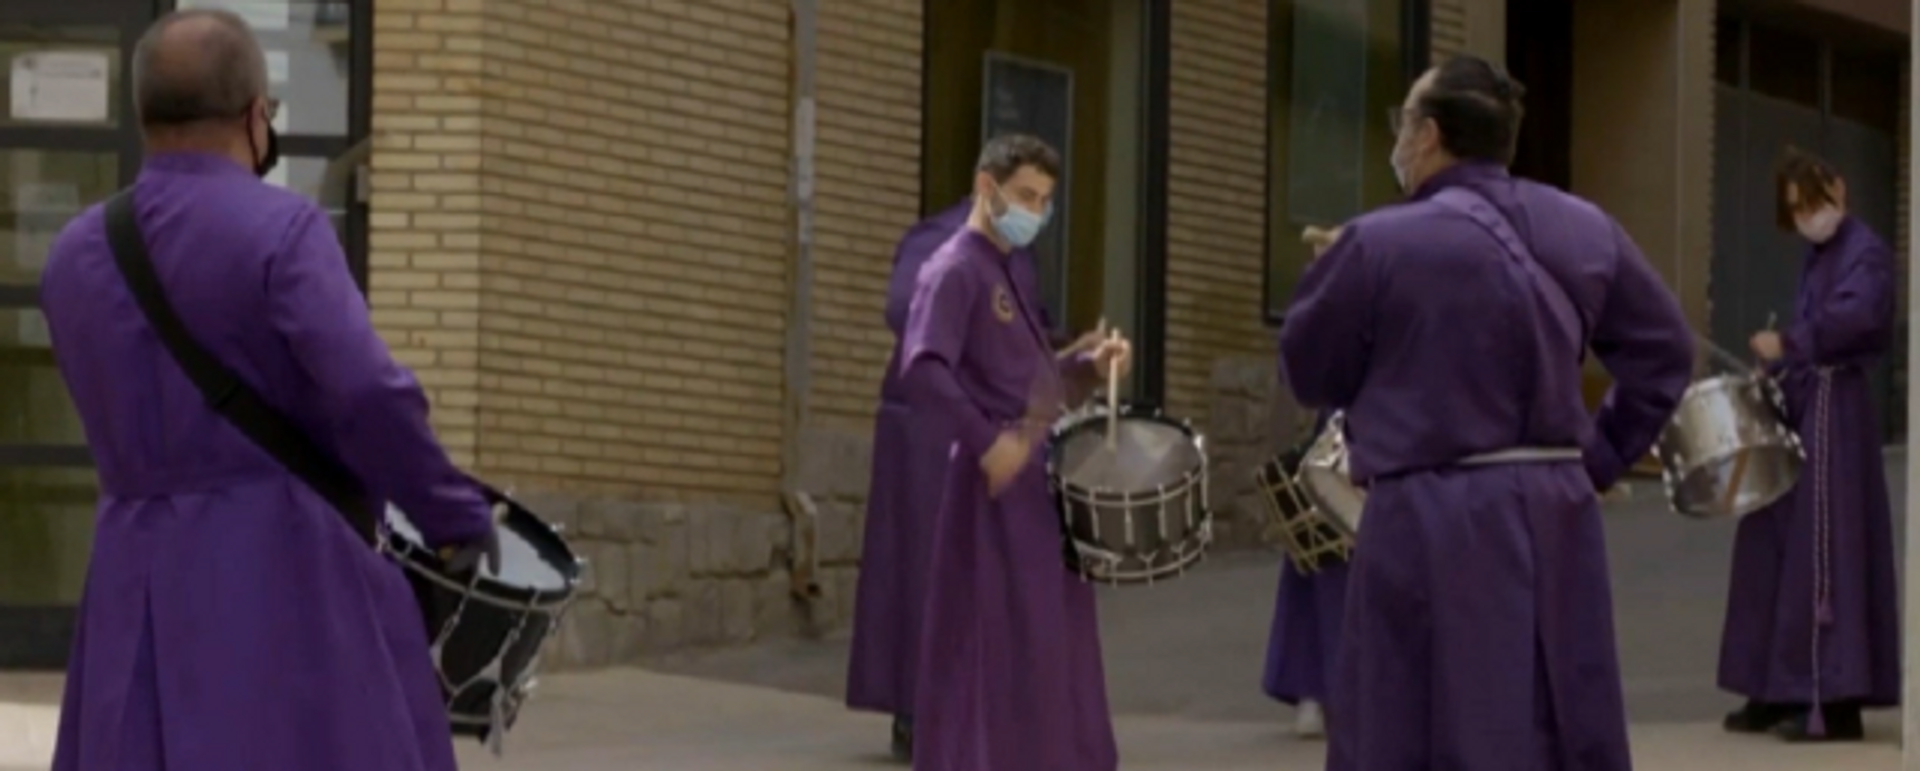 Los tradicionales tambores de la Semana Santa se dejan escuchar en España pese a la pandemia - Sputnik Mundo, 1920, 03.04.2021